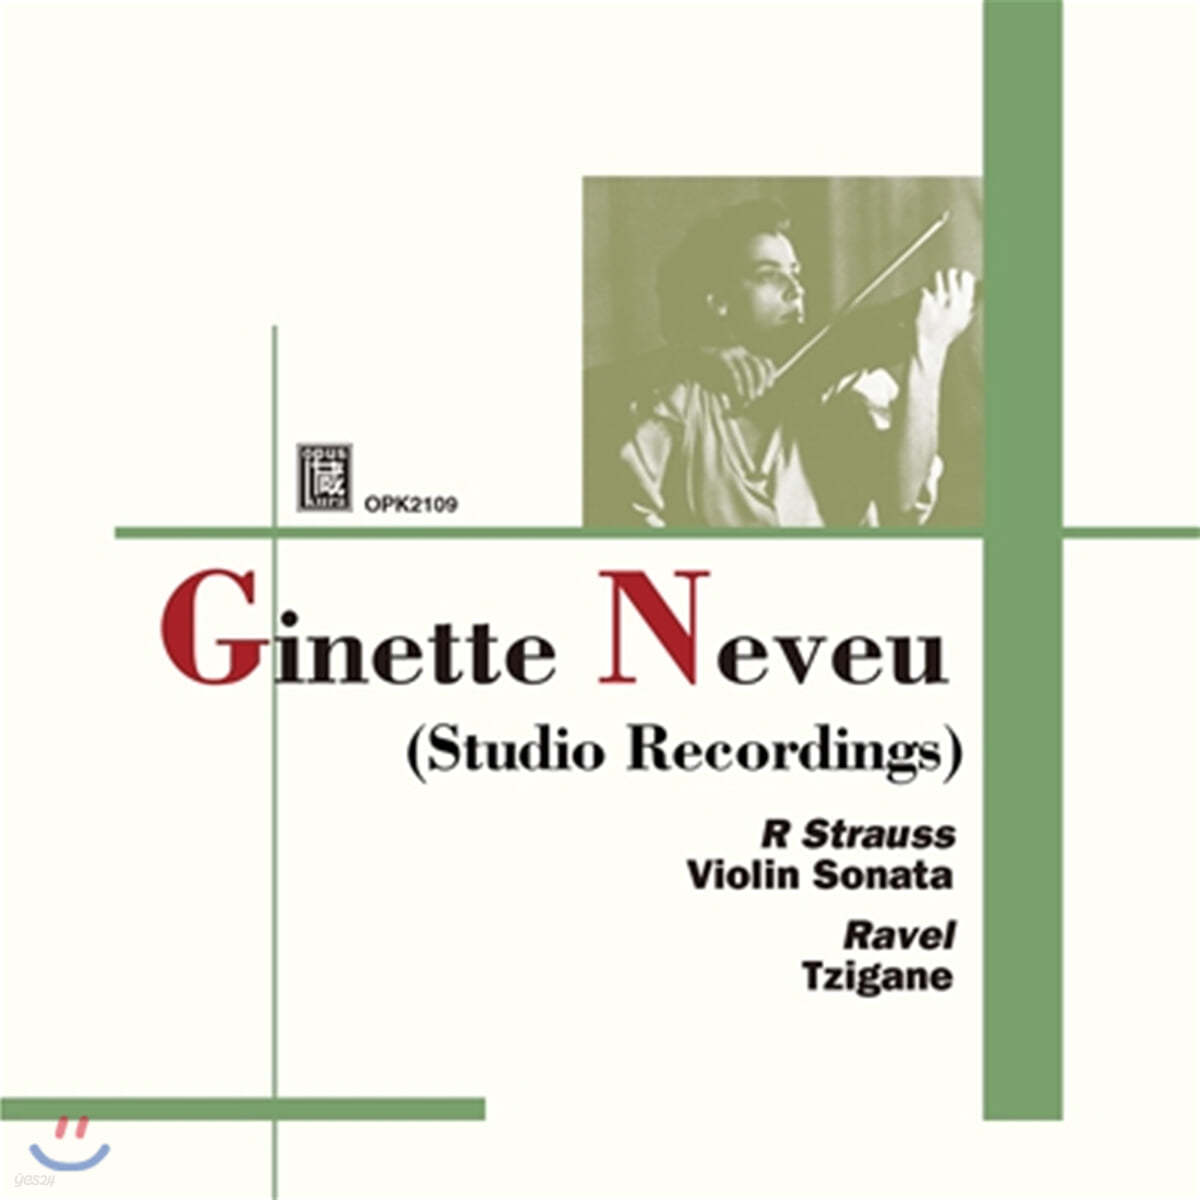 Ginette Neveu 슈트라우스: 바이올린 소나타 / 라벨: 치간느 외 - 지네트 느뵈 (Strauss: Violin Sonata / Ravel: Tzigane)